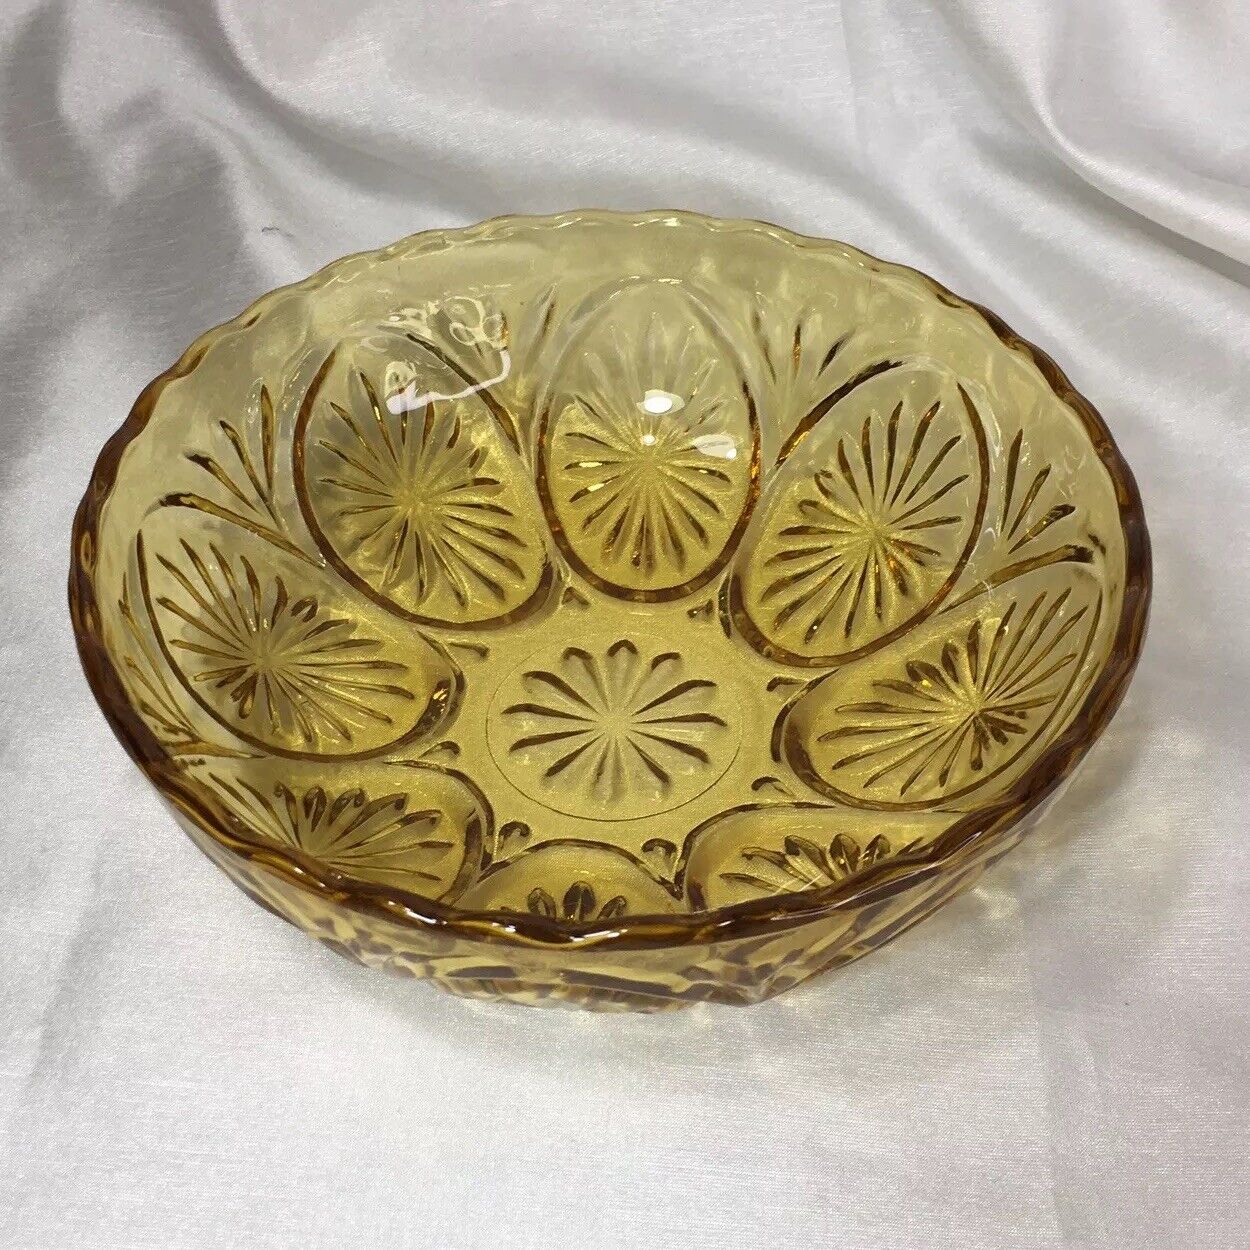 Amber Glass Bowl, Vintage, Starburst, Scalloped Edge❤️